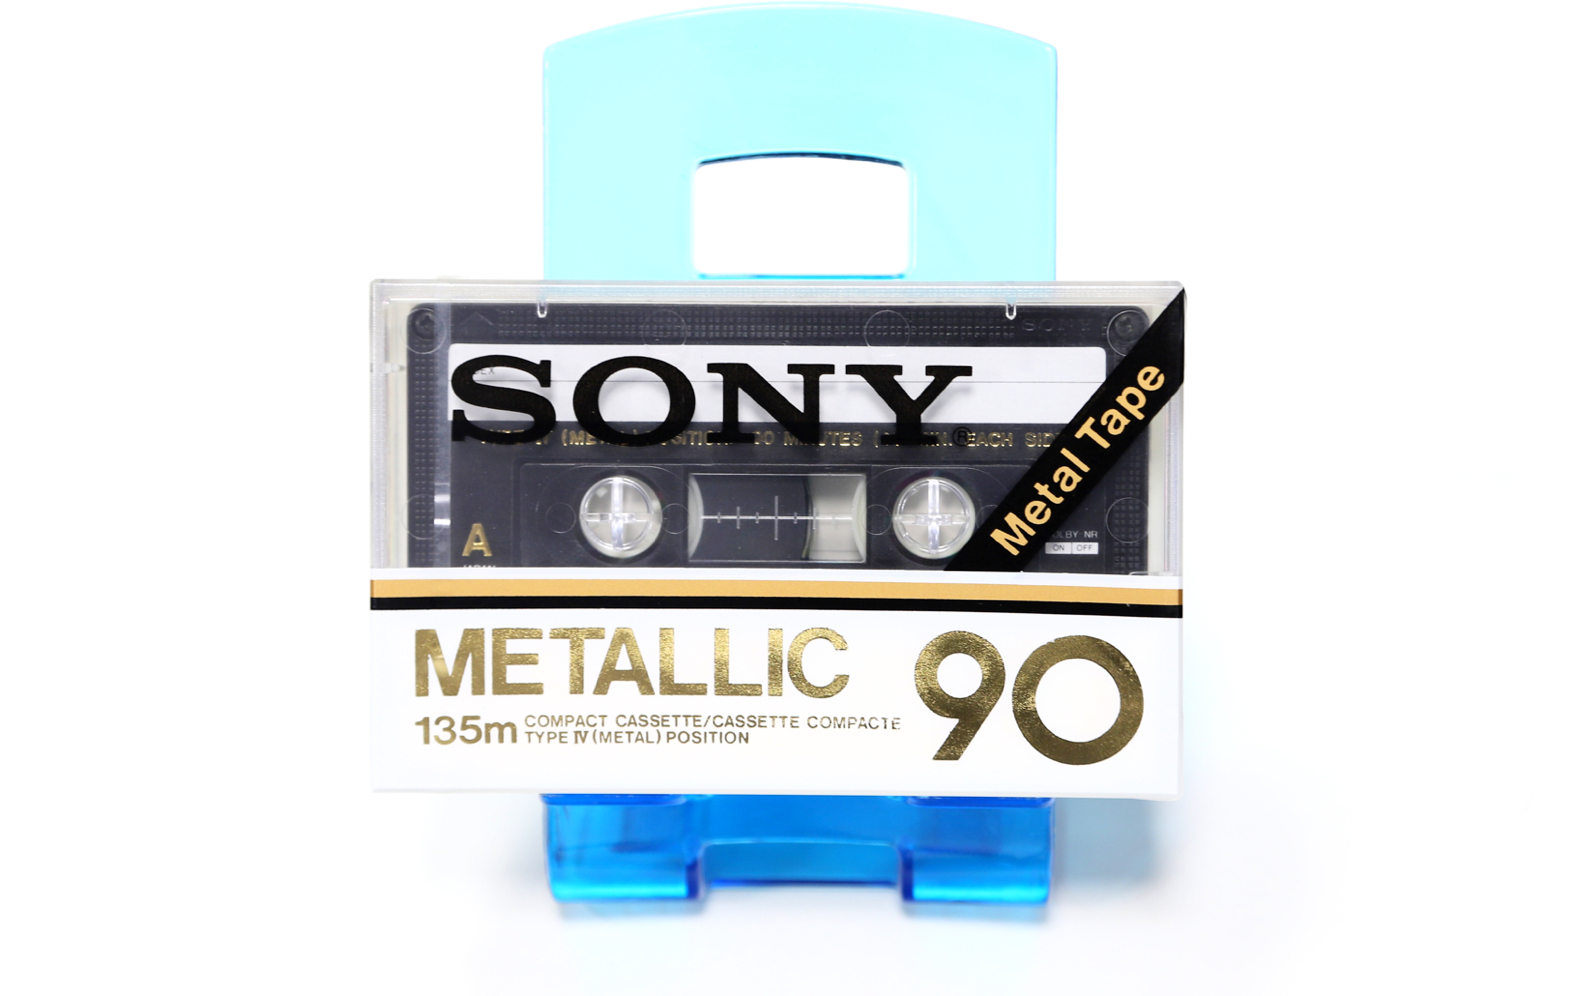 SONY METALLIC 90